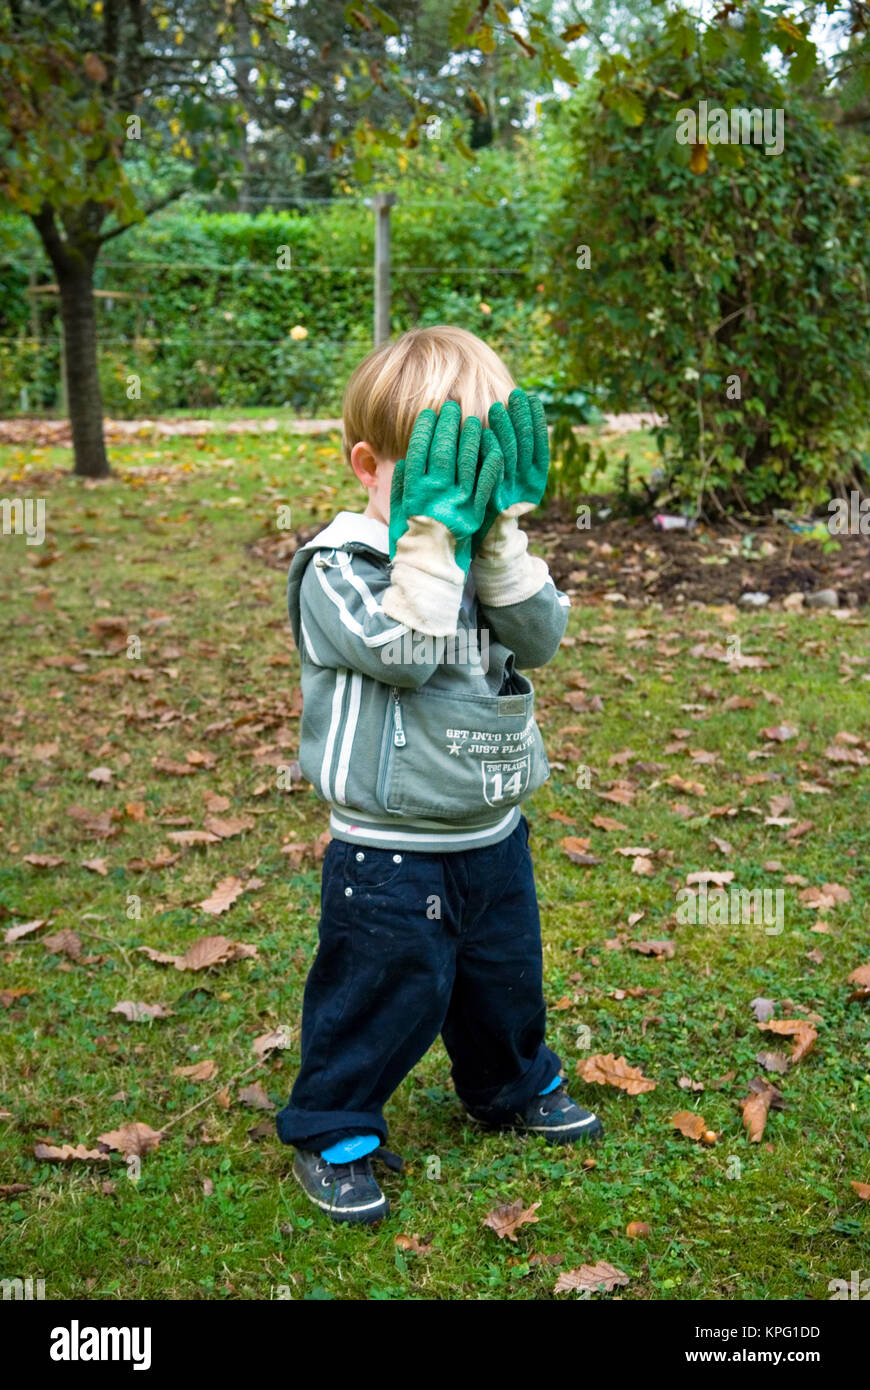 Trois ans se cache derrière des profils des gants de jardinage dans un jeu  de cache-cache dans un jardin Photo Stock - Alamy